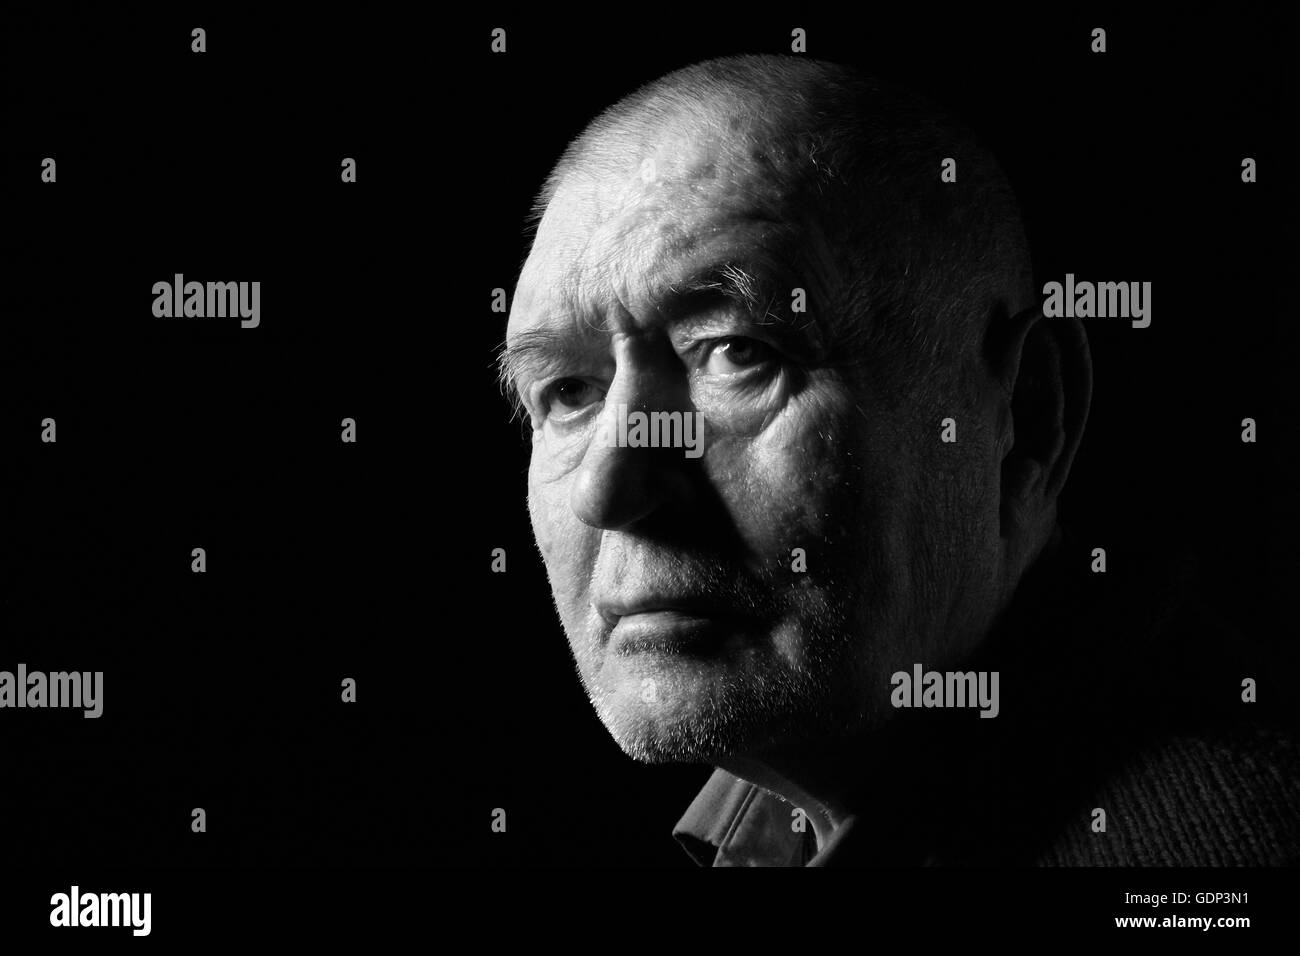 serious old man senior on black background, monochrome Stock Photo